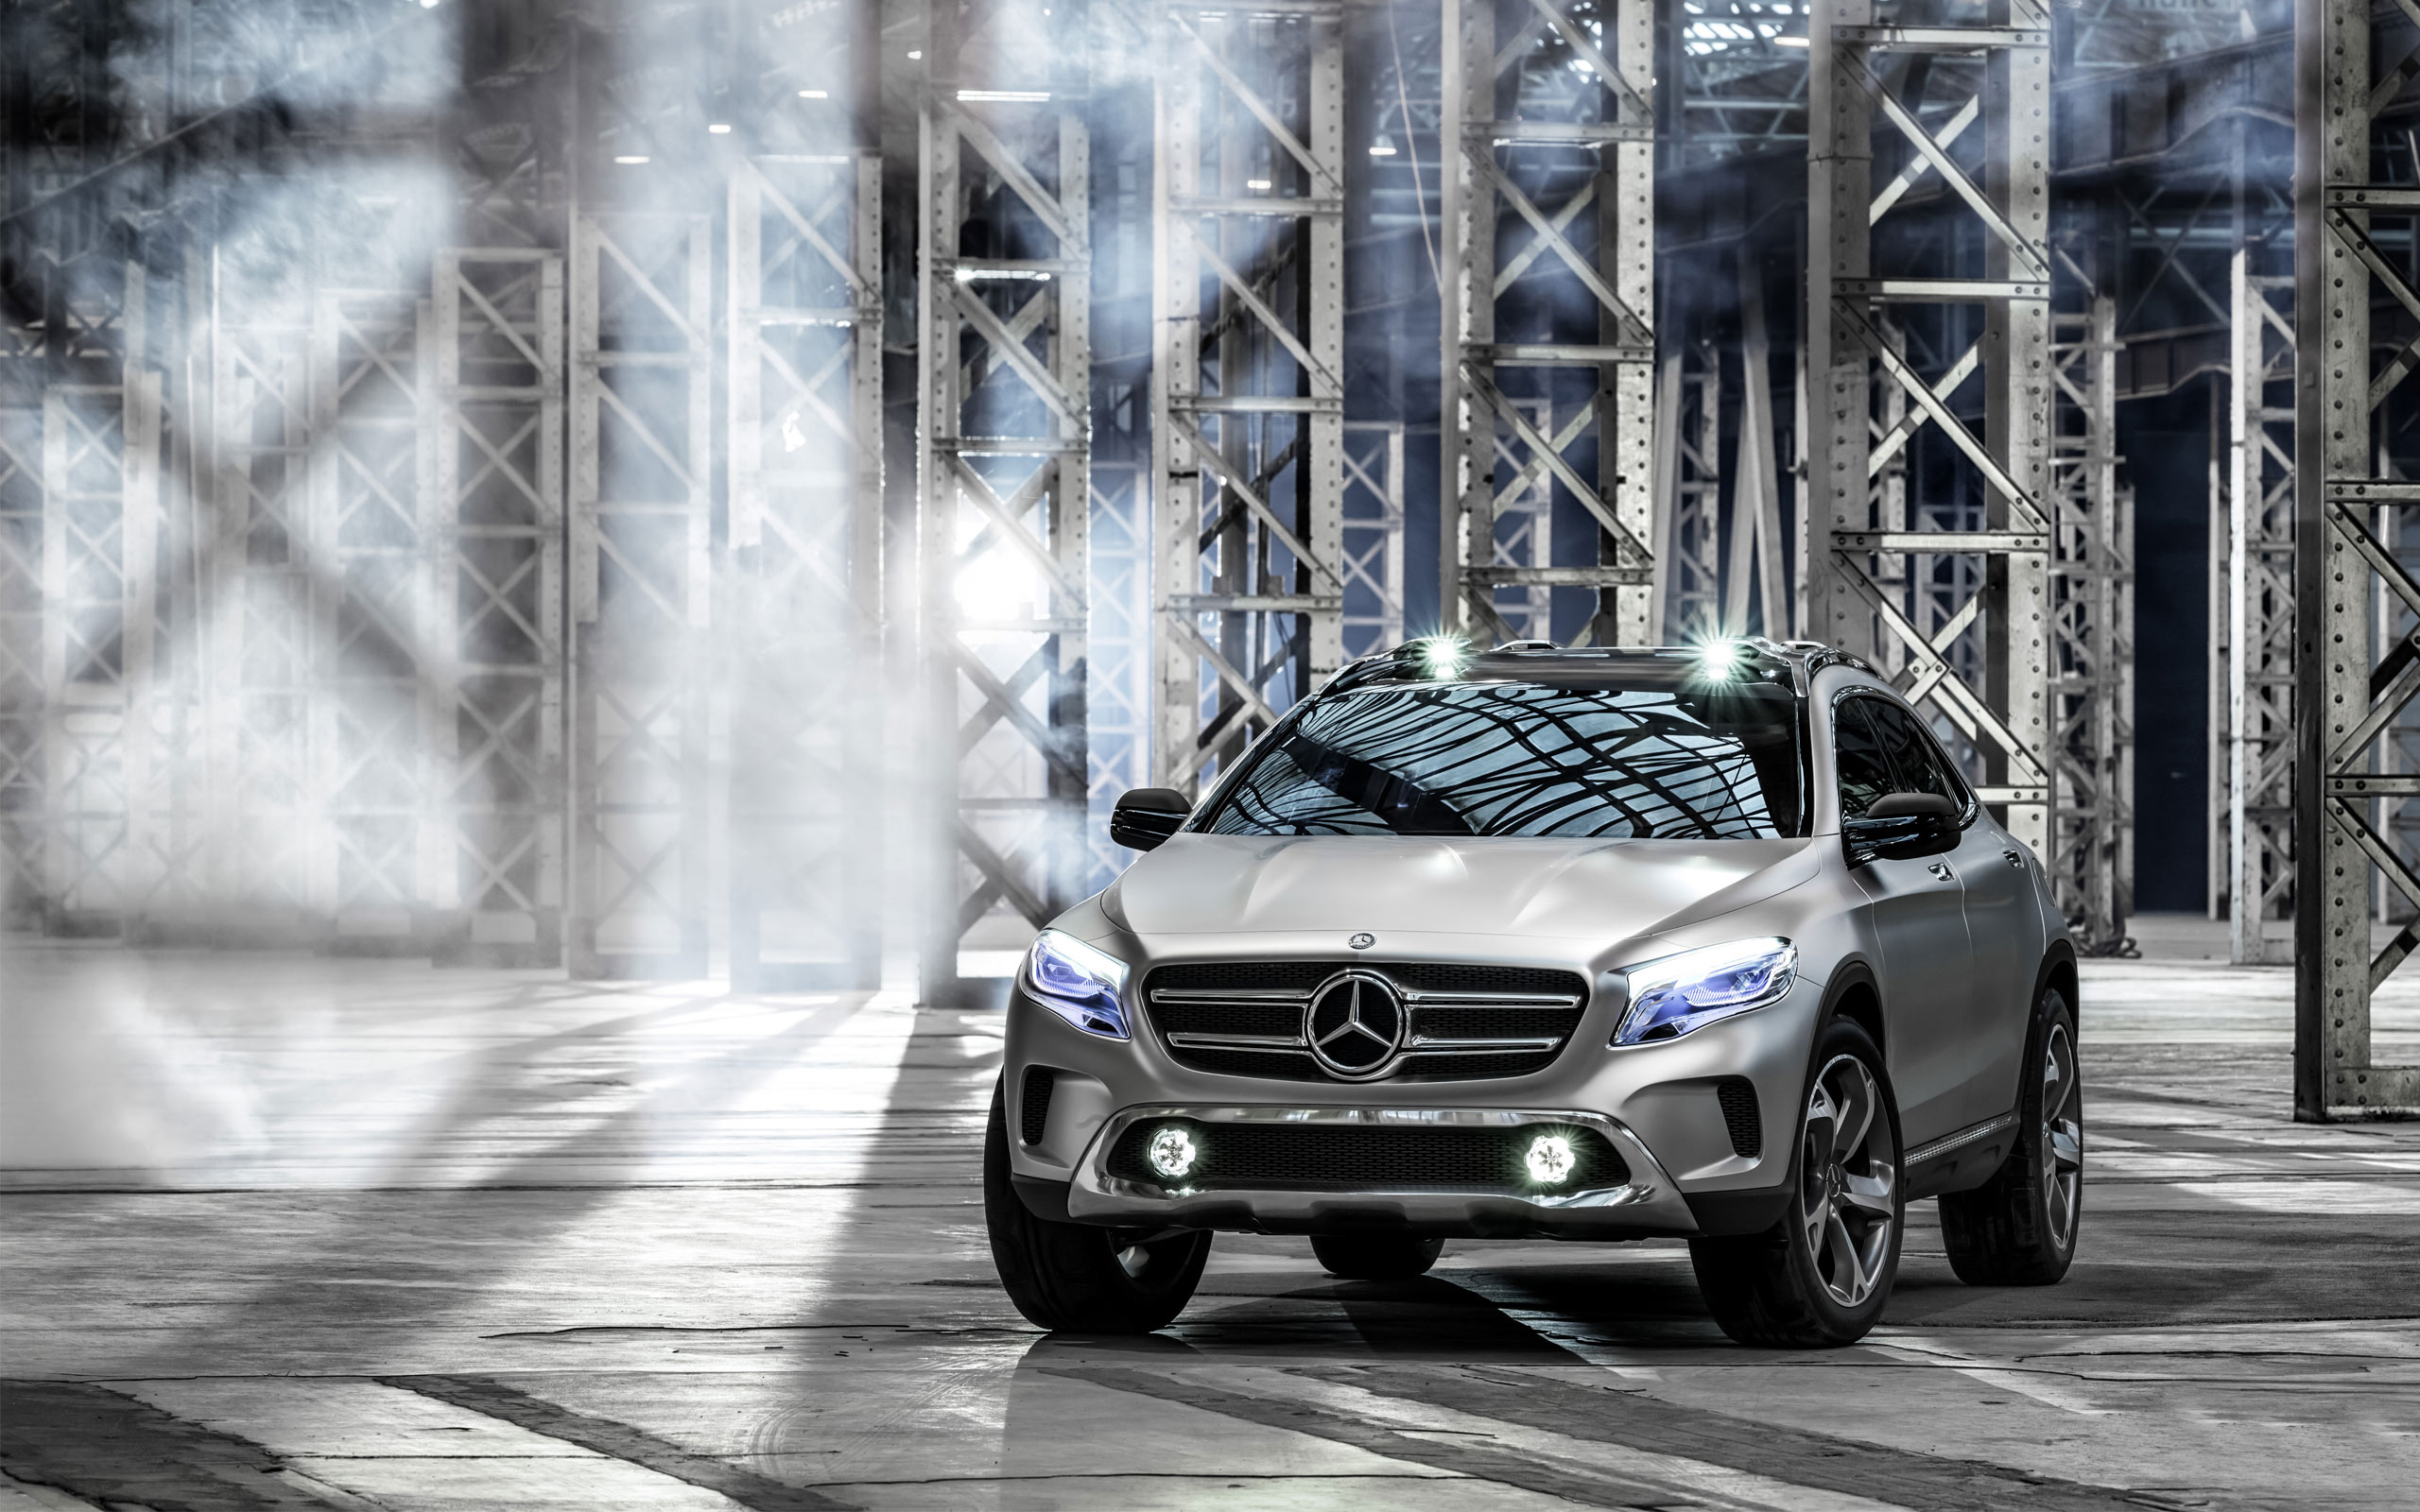 2013 Mercedes Benz GLA Concept Wallpaper | HD Car Wallpapers